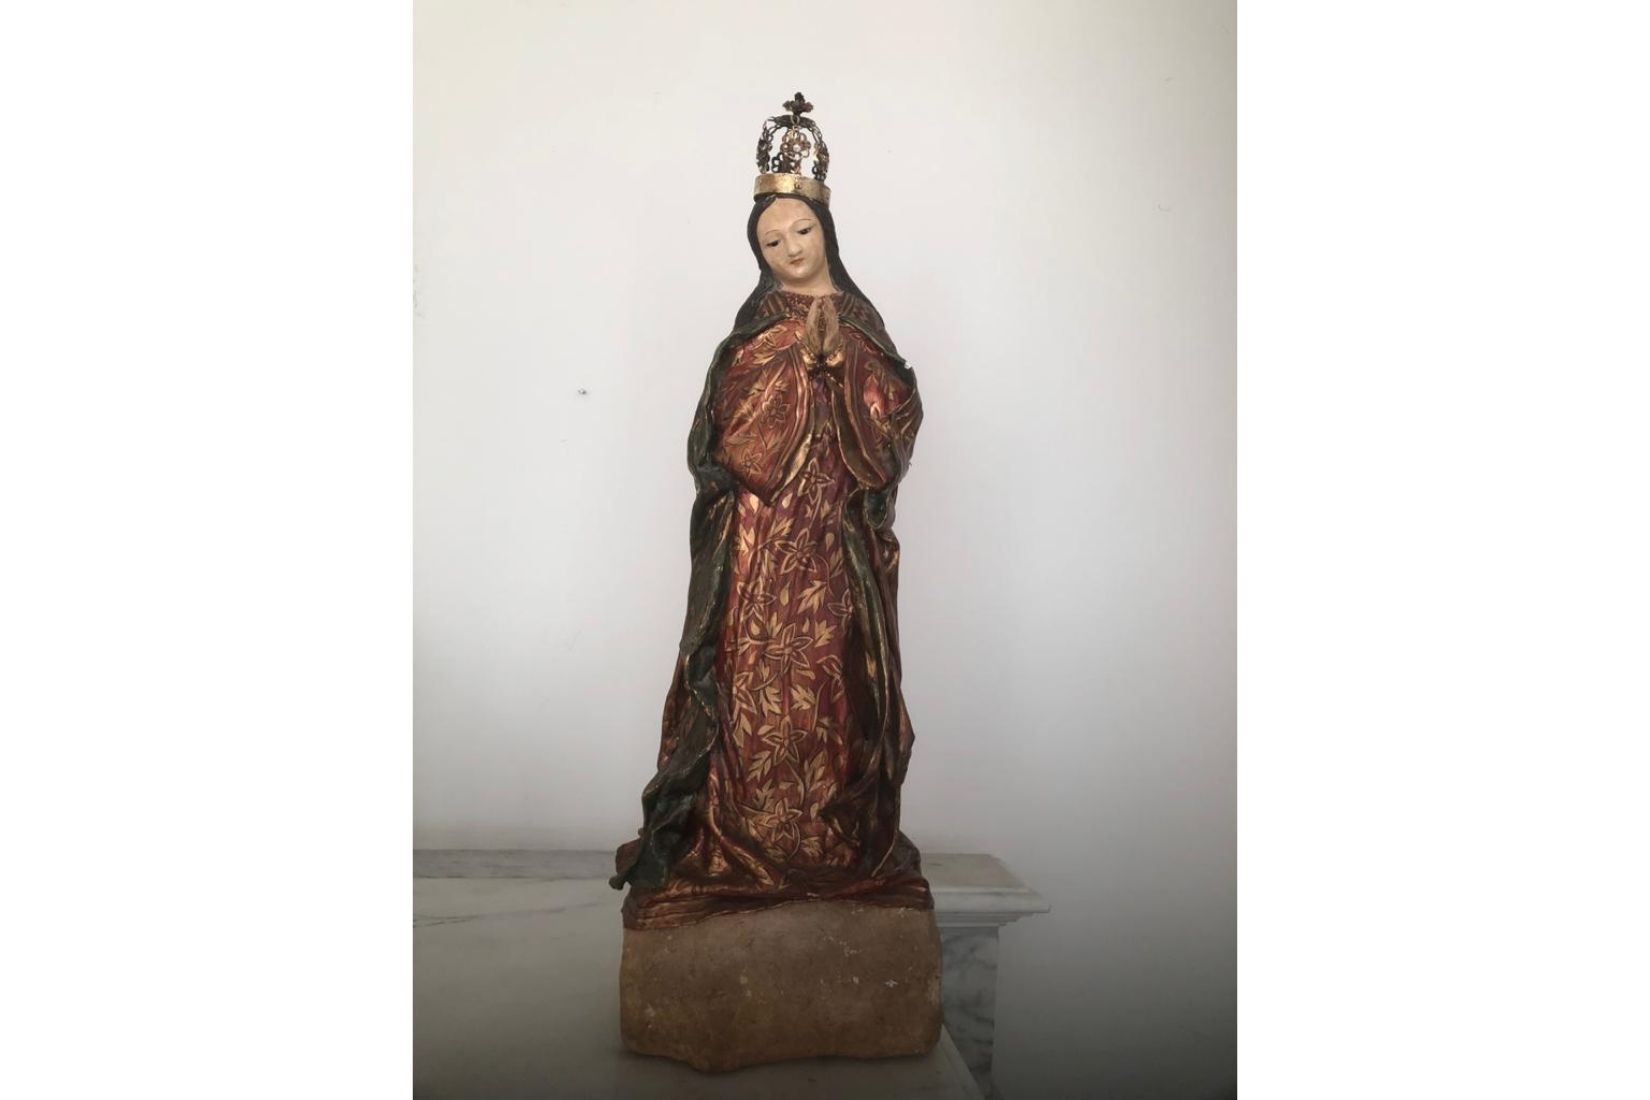 Virgen de pasta de caña. Artesano Gaspar Mario Agustín. Pátzcuaro, Mich. Col. Ana Luisa Landucci.